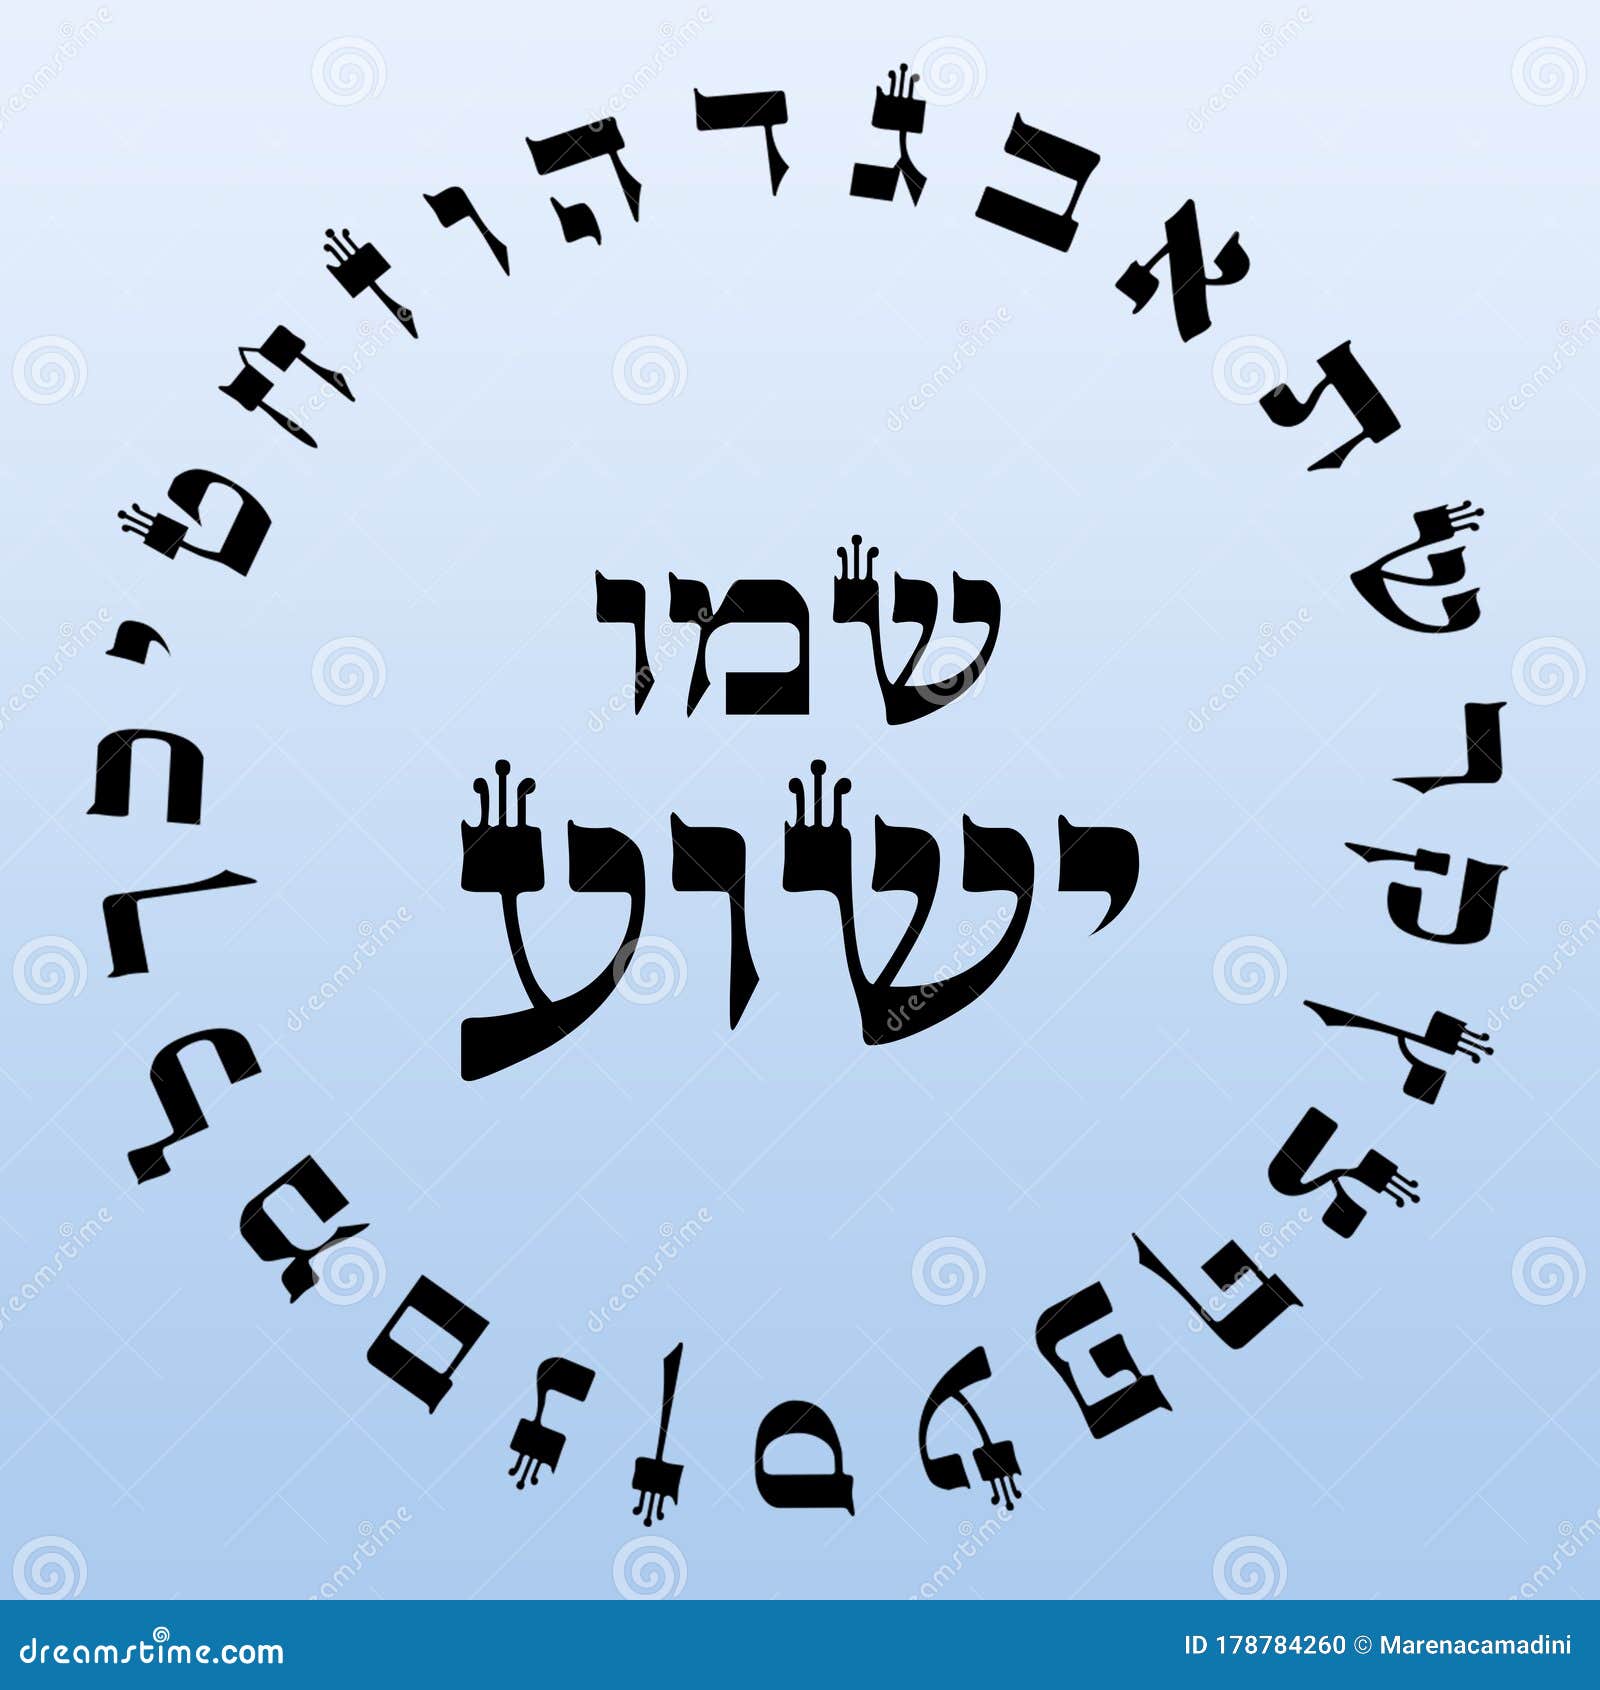 Design de texto shalom shalom é uma palavra hebraica que significa